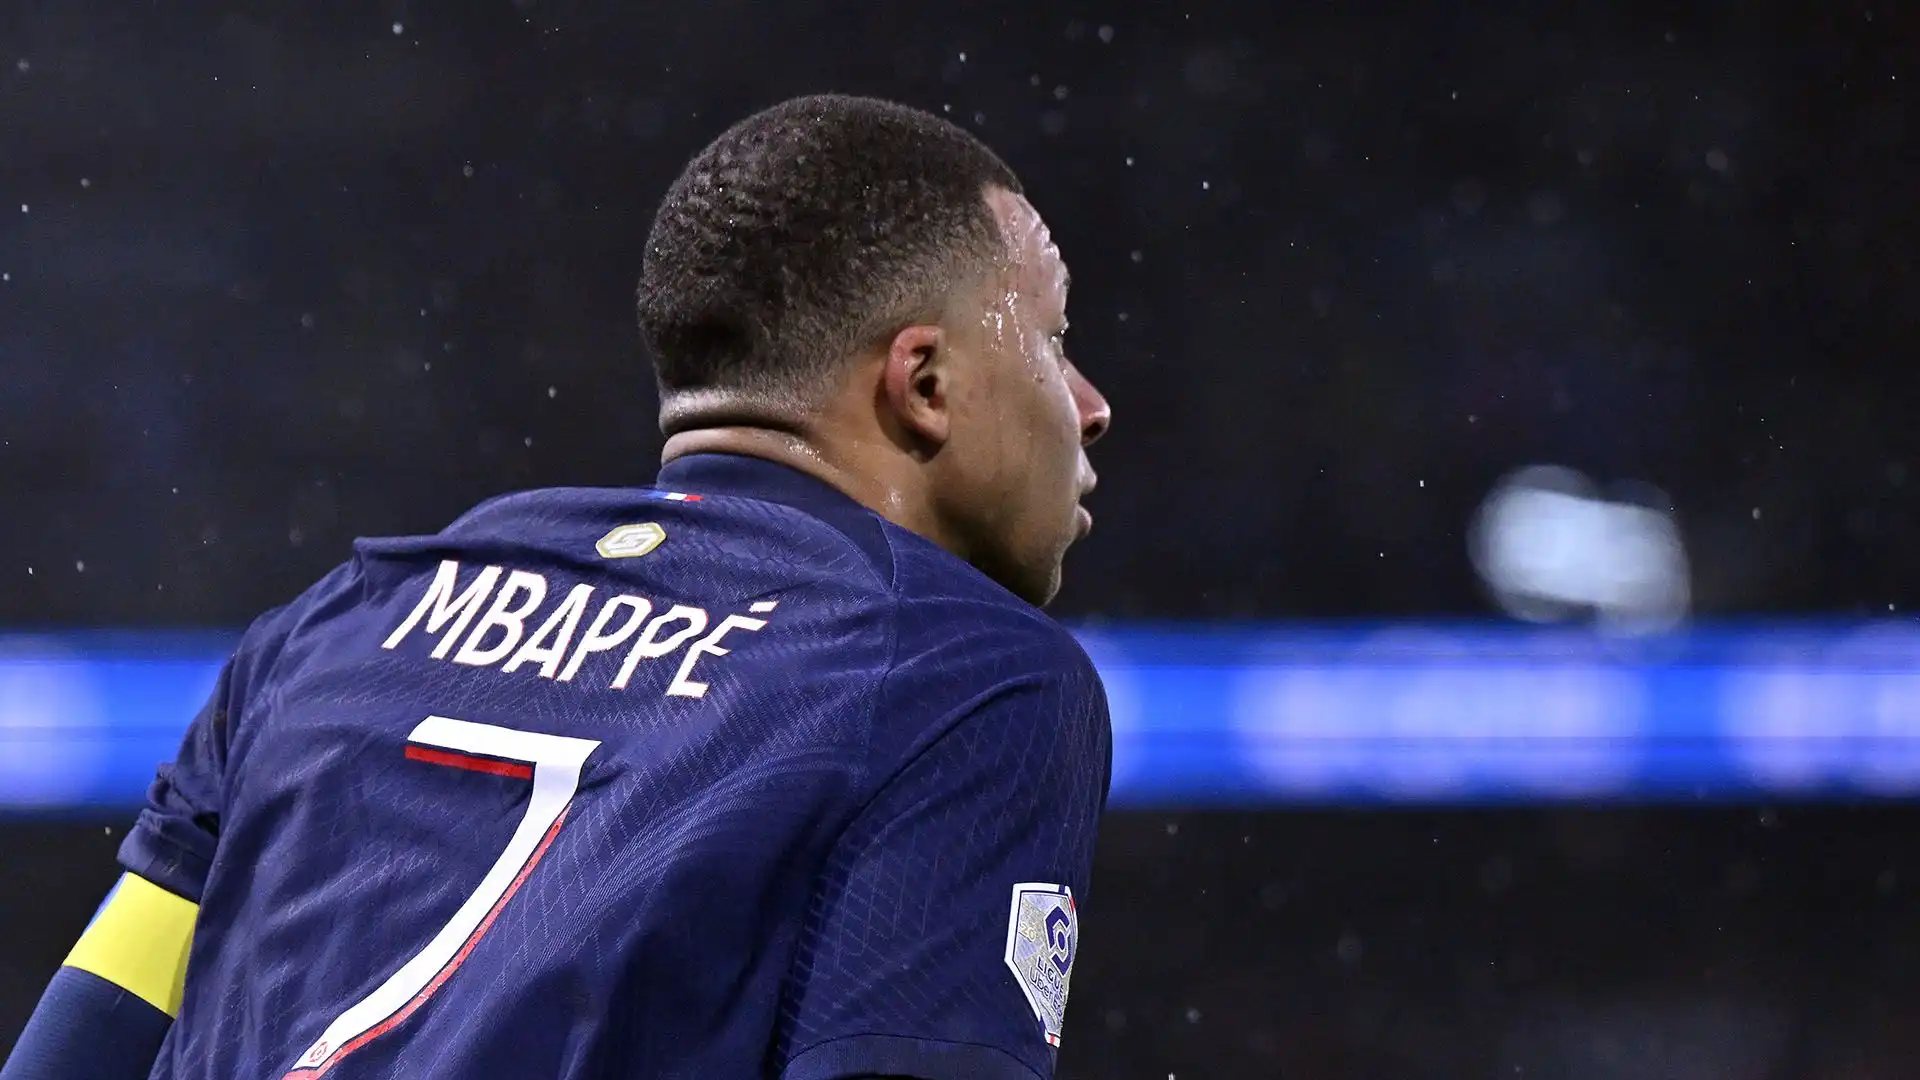 Mbappé è stato criticato da diversi tifosi per il modo in cui è uscito dal campo